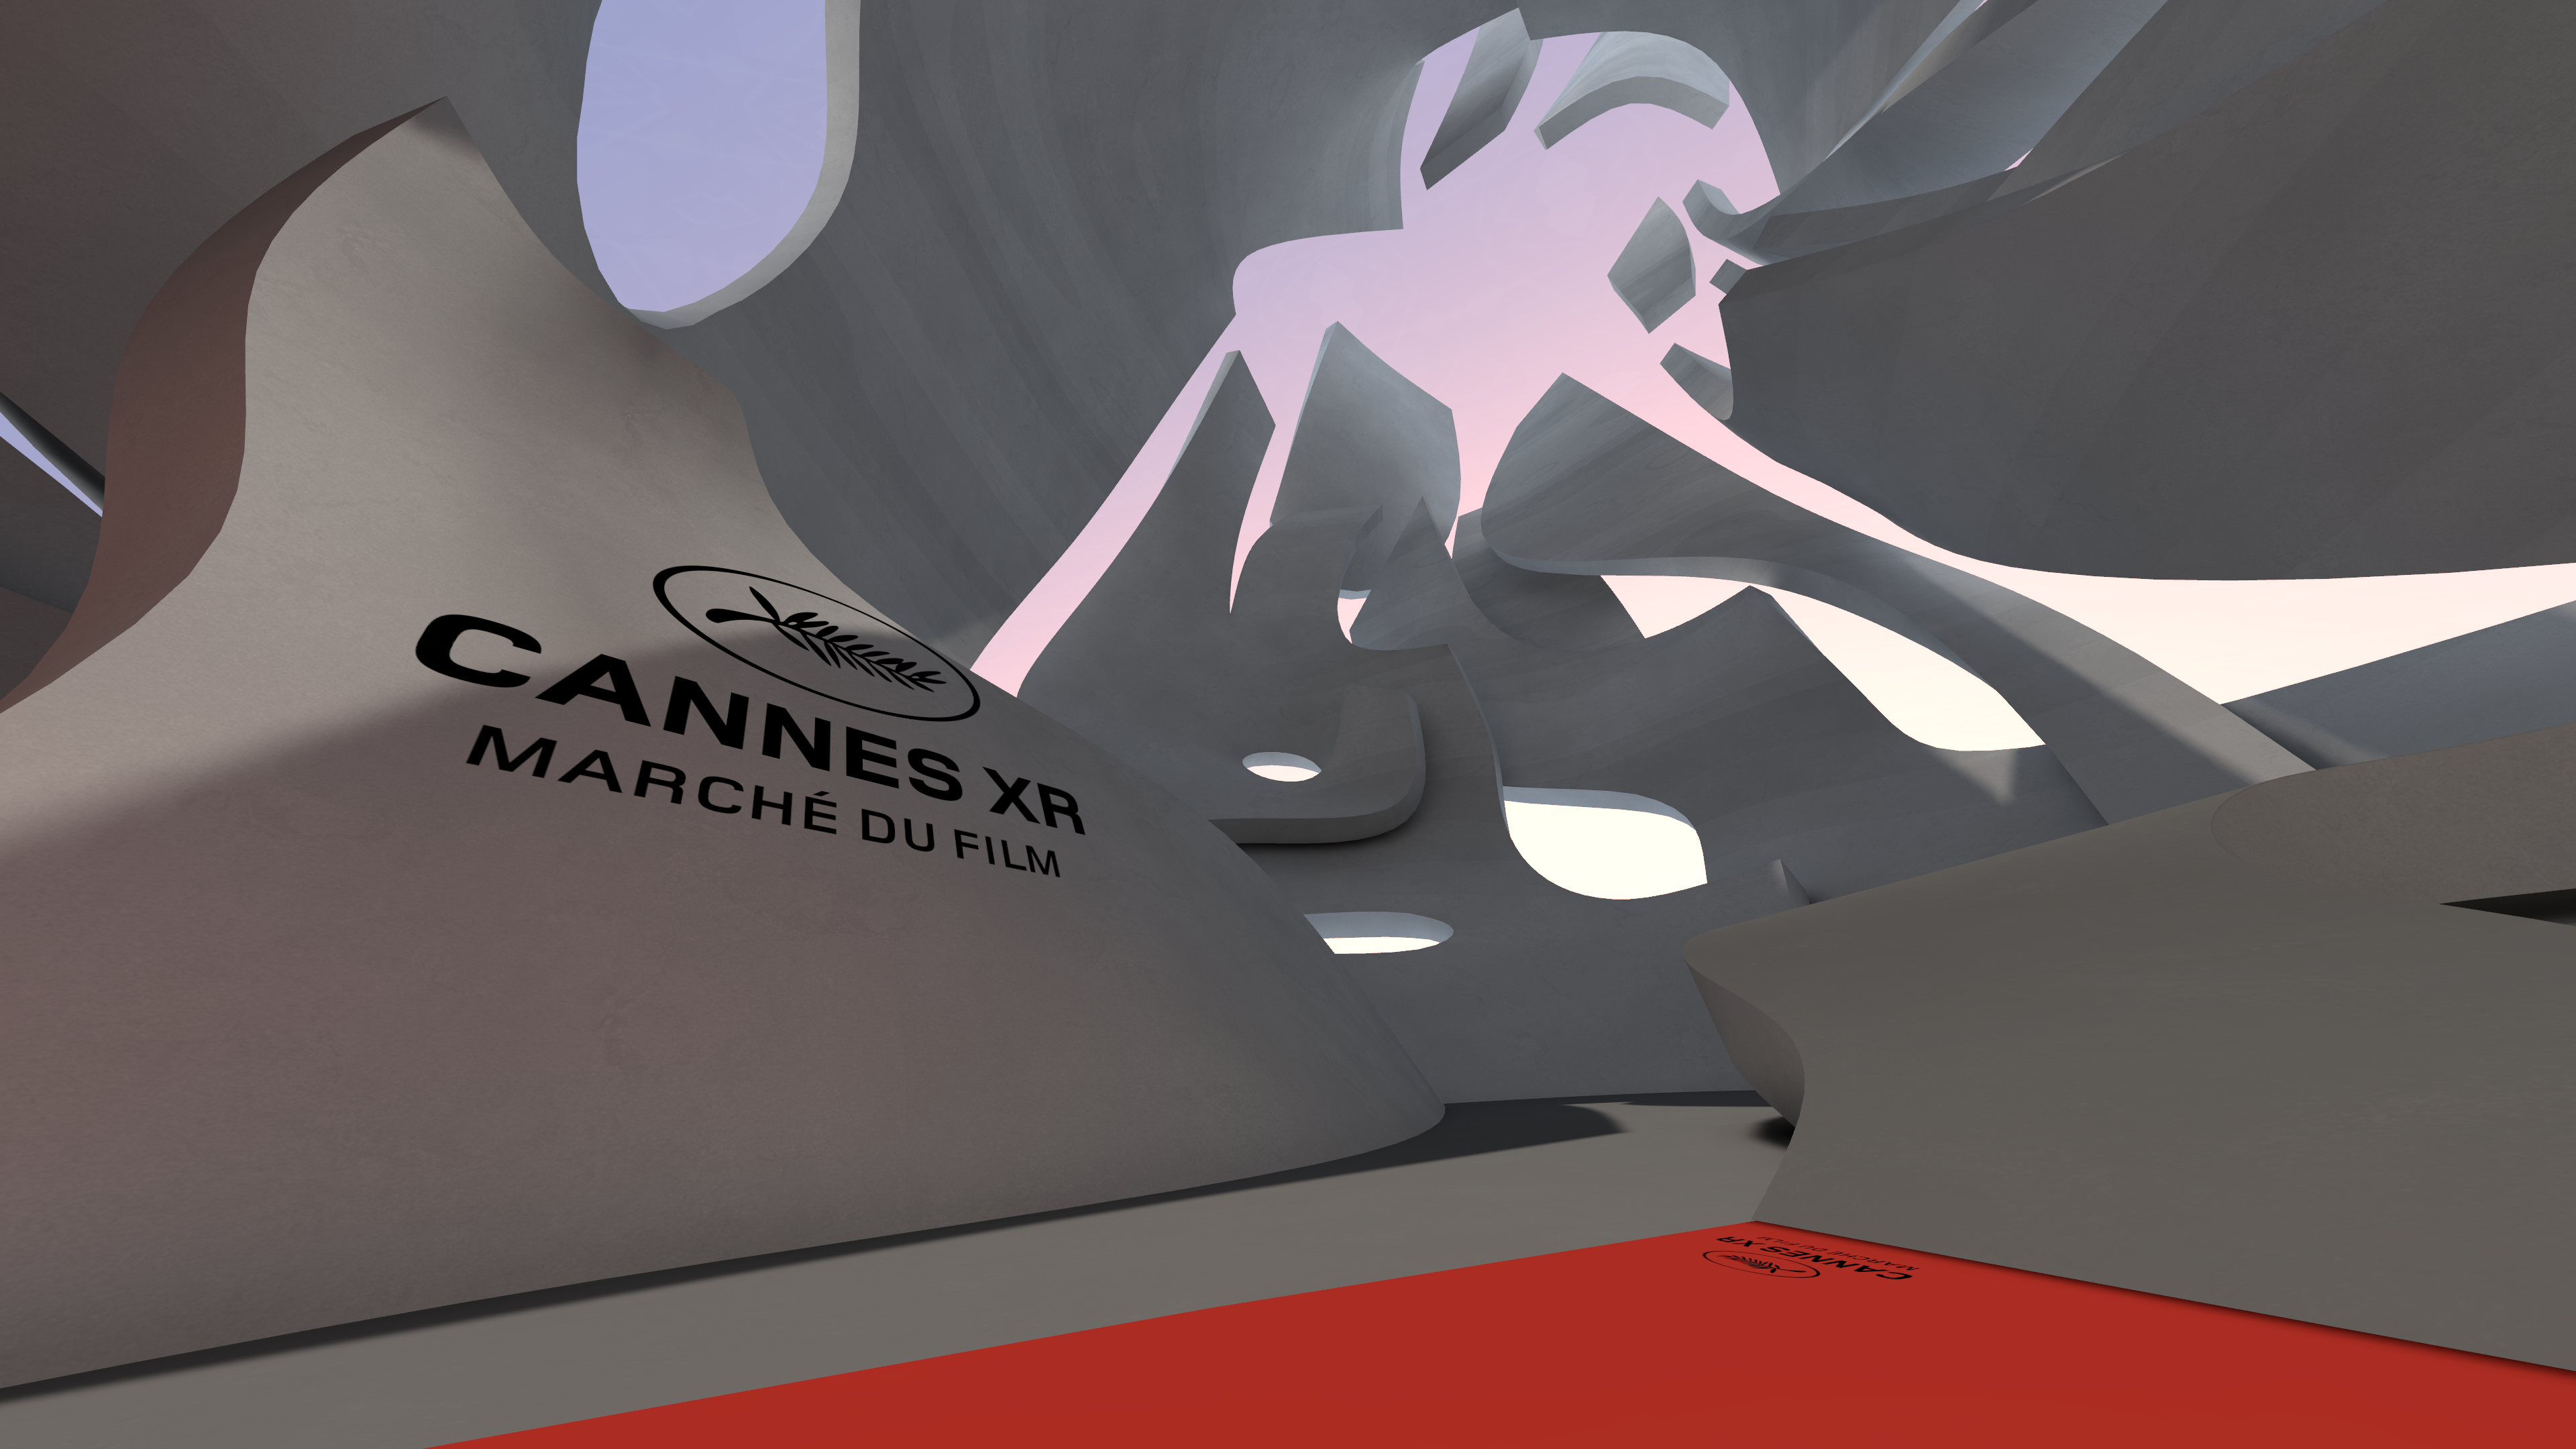 Compte rendu de Cannes XR 2020 - Édition virtuelle